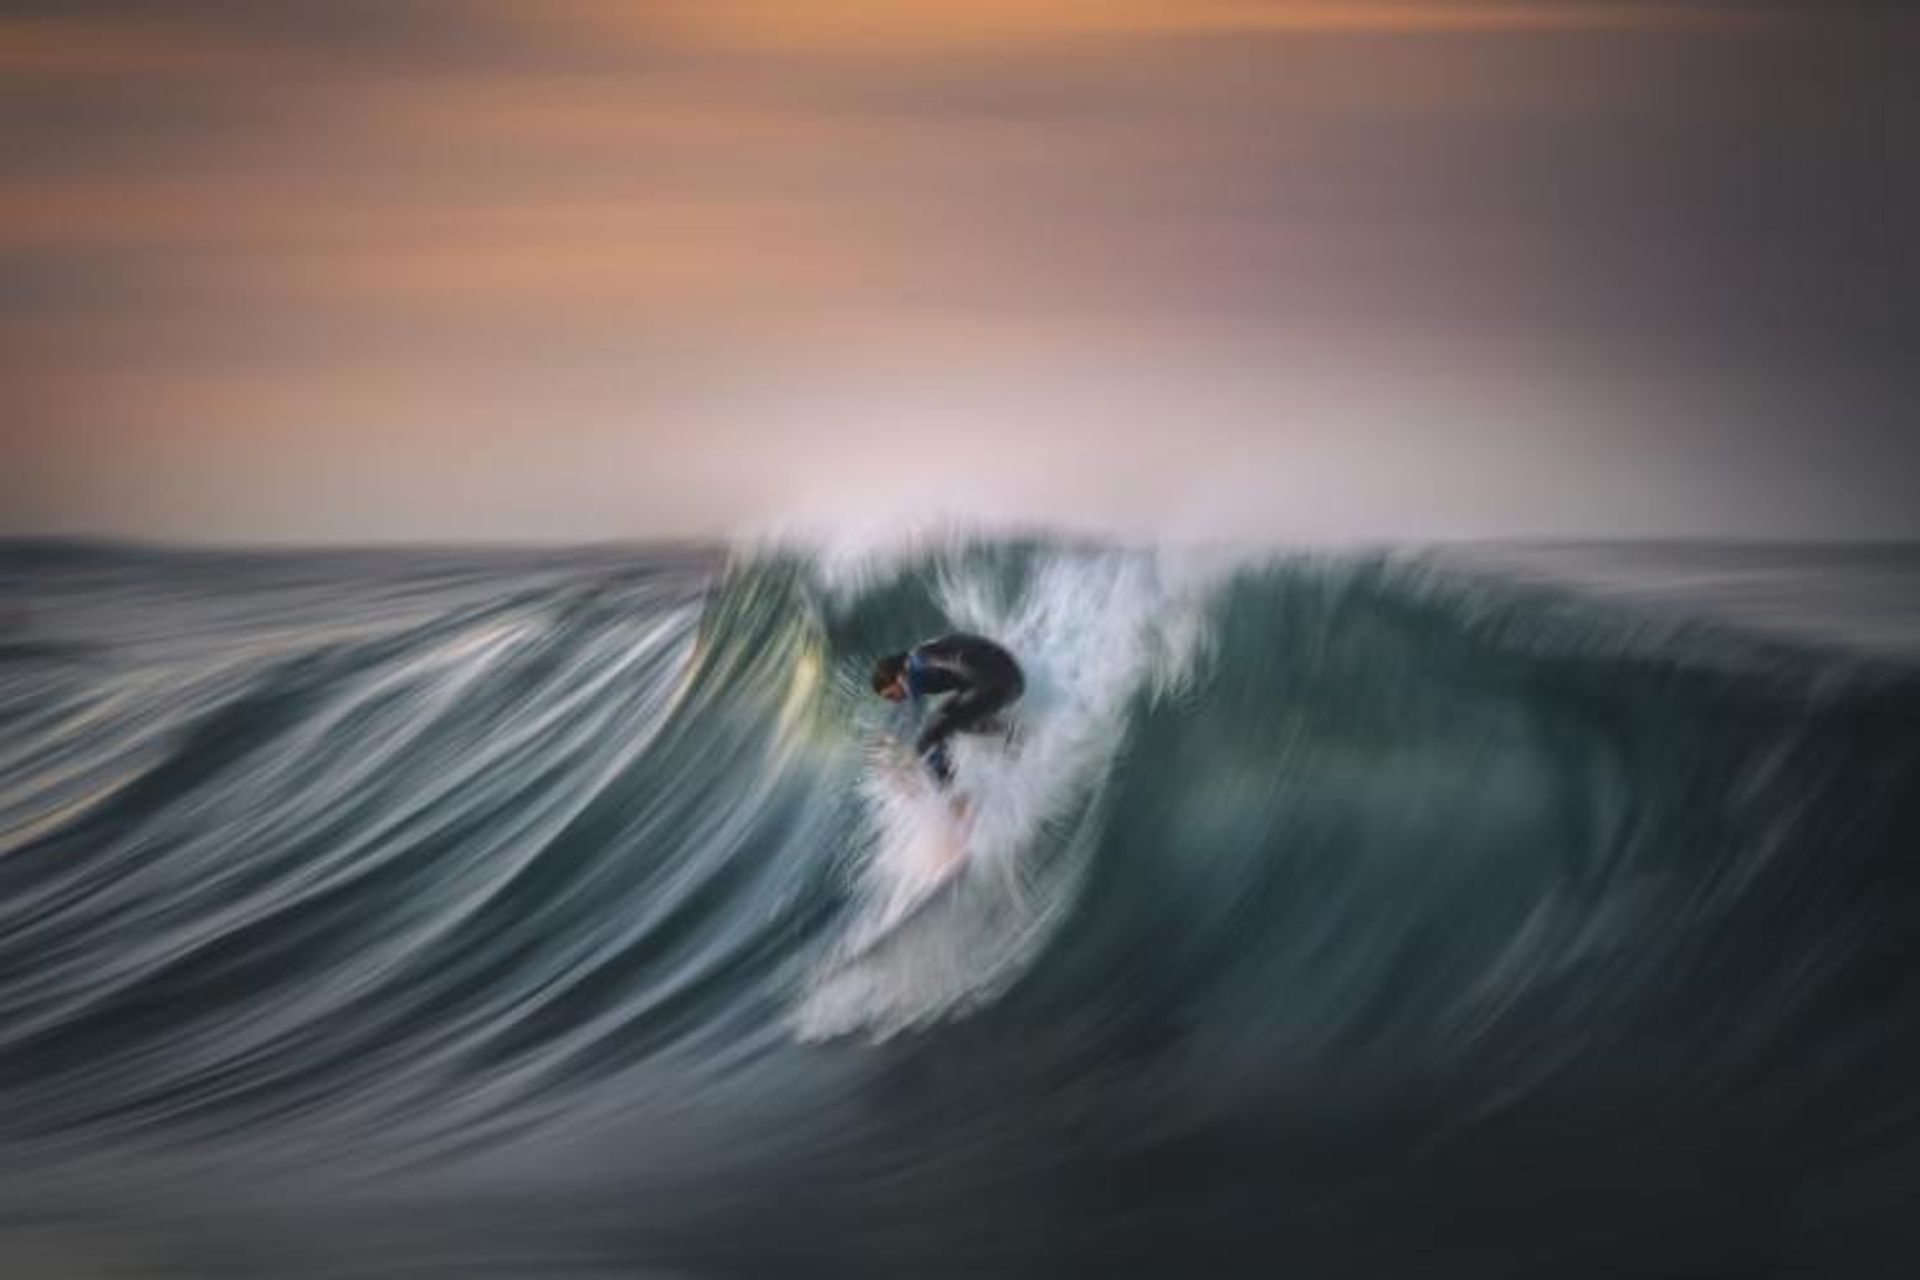 مرجع متخصصين ايران عكس فيناليست جورج راگلي در مسابقه عكاسي 2020 Surf Photo Nikon Australia